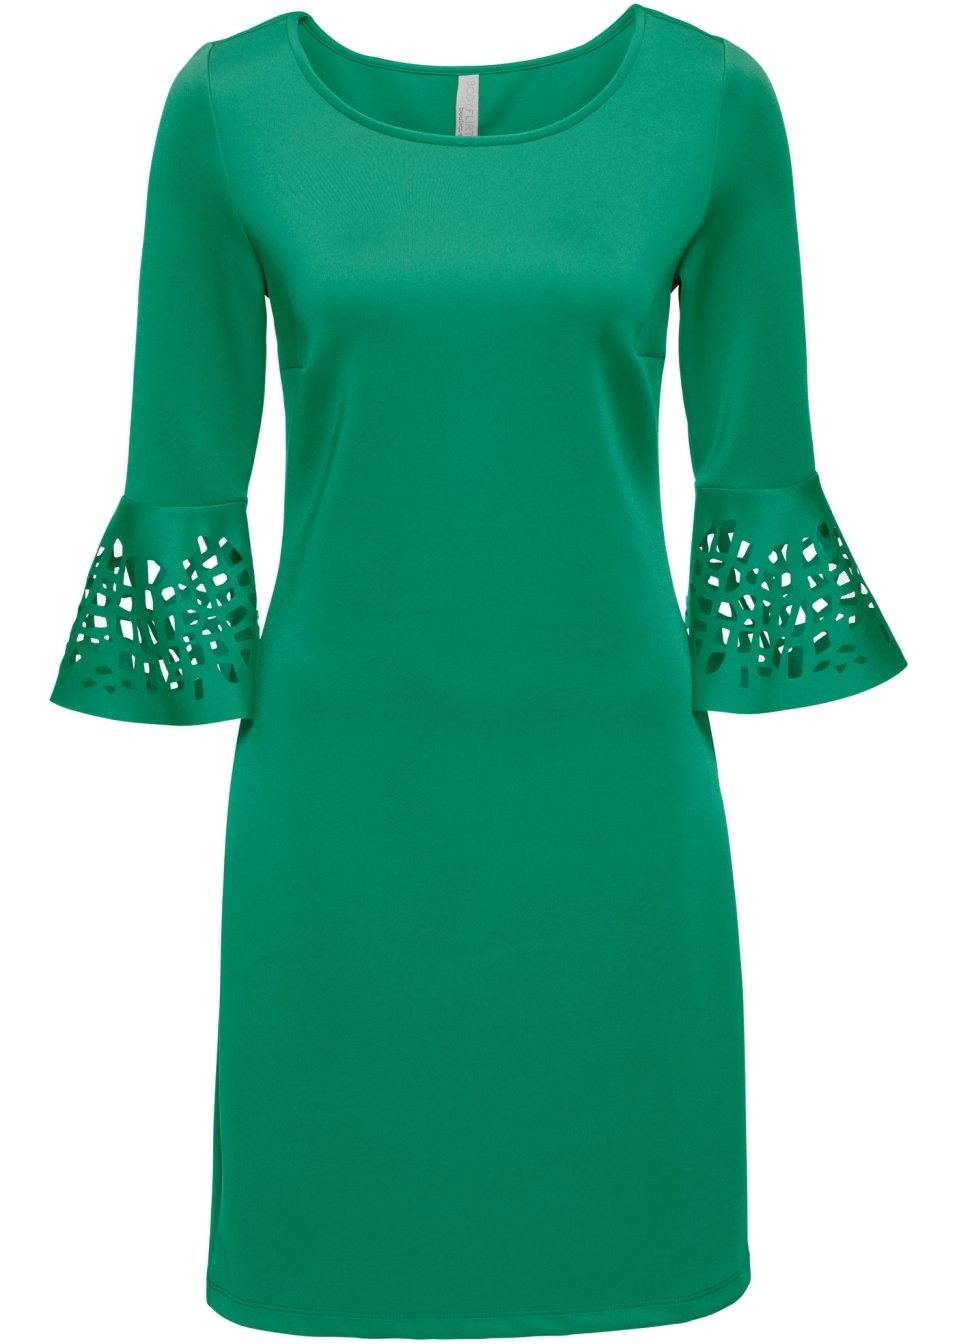 17 Schön Grünes Kurzes Kleid BoutiqueDesigner Luxurius Grünes Kurzes Kleid Spezialgebiet